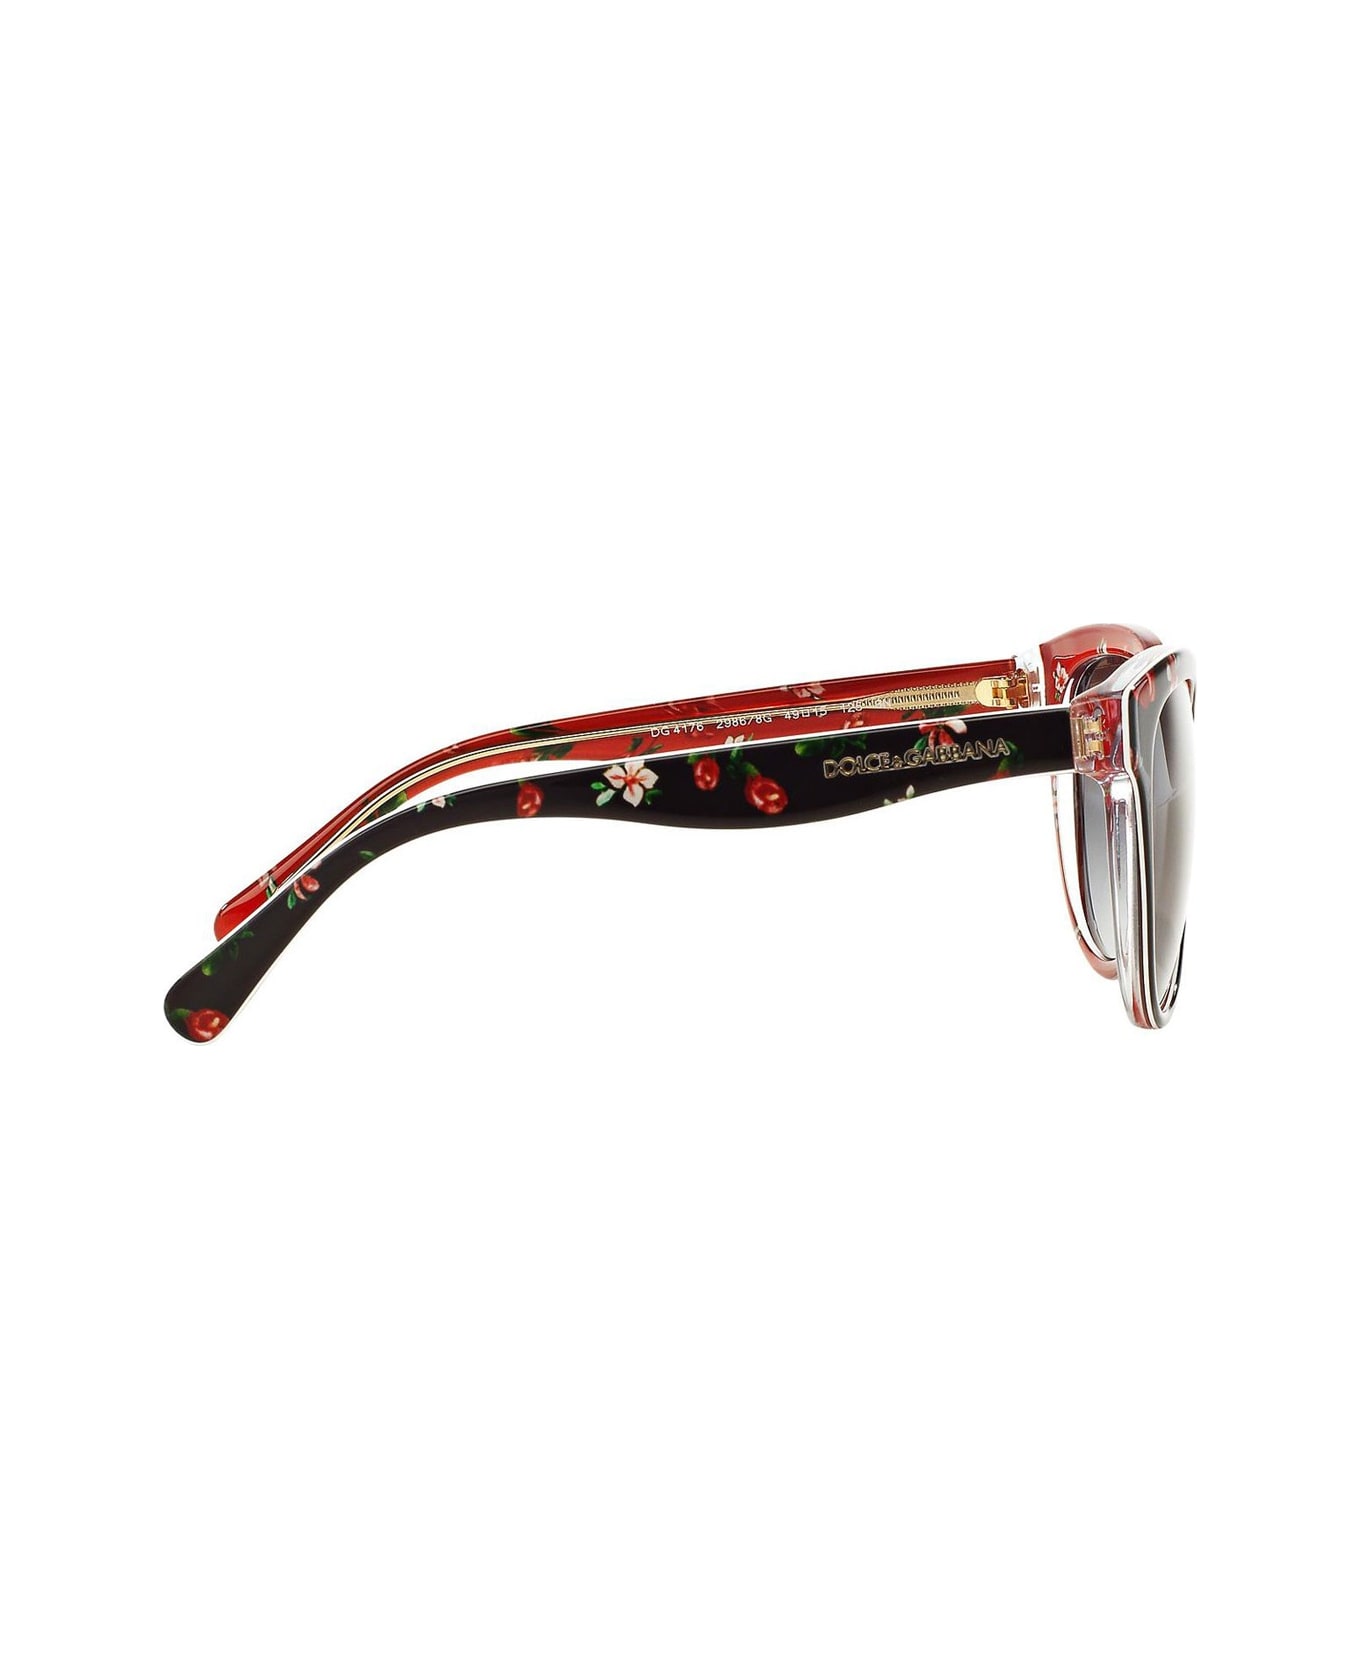 Prada's cat-eye sunglasses Eyewear Dg4176 Junior Sunglasses - Nero